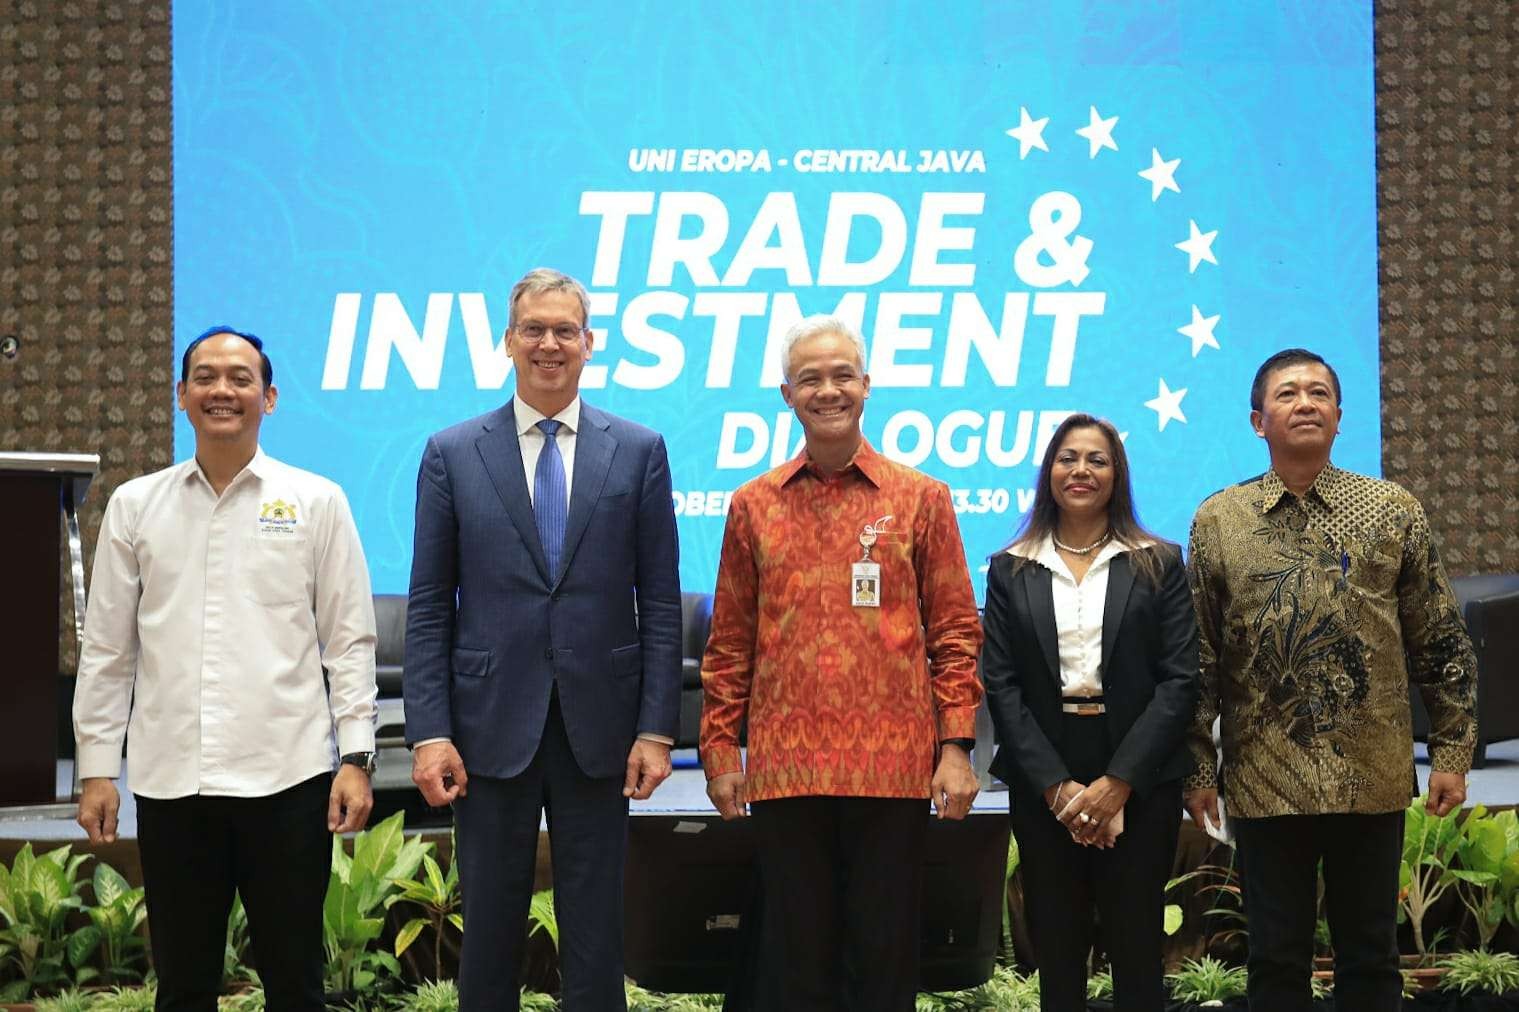 Gubernur Jawa Tengah, Ganjar Pranowo (tiga dari kiri) berharap negara-negara Uni Eropa berinvestasi lebih besar ke Jawa Tengah. (Foto: dok. Humas Pemprov Jateng)